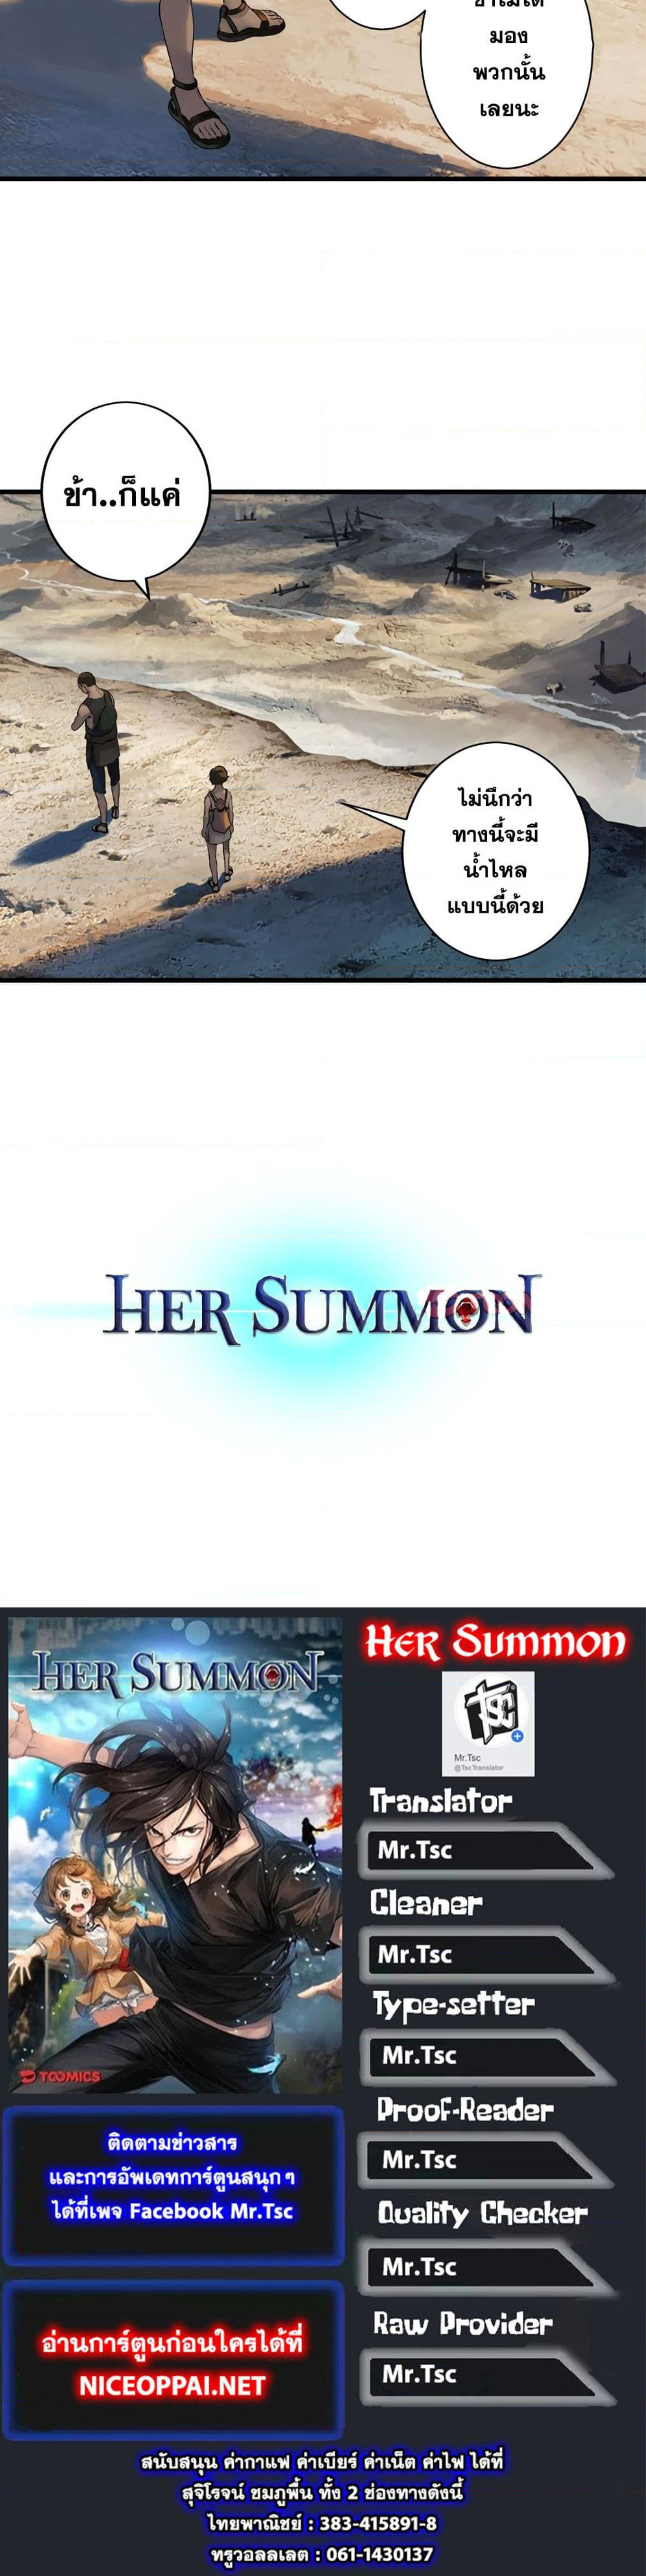 her summon ตอนที่ 66 (9)